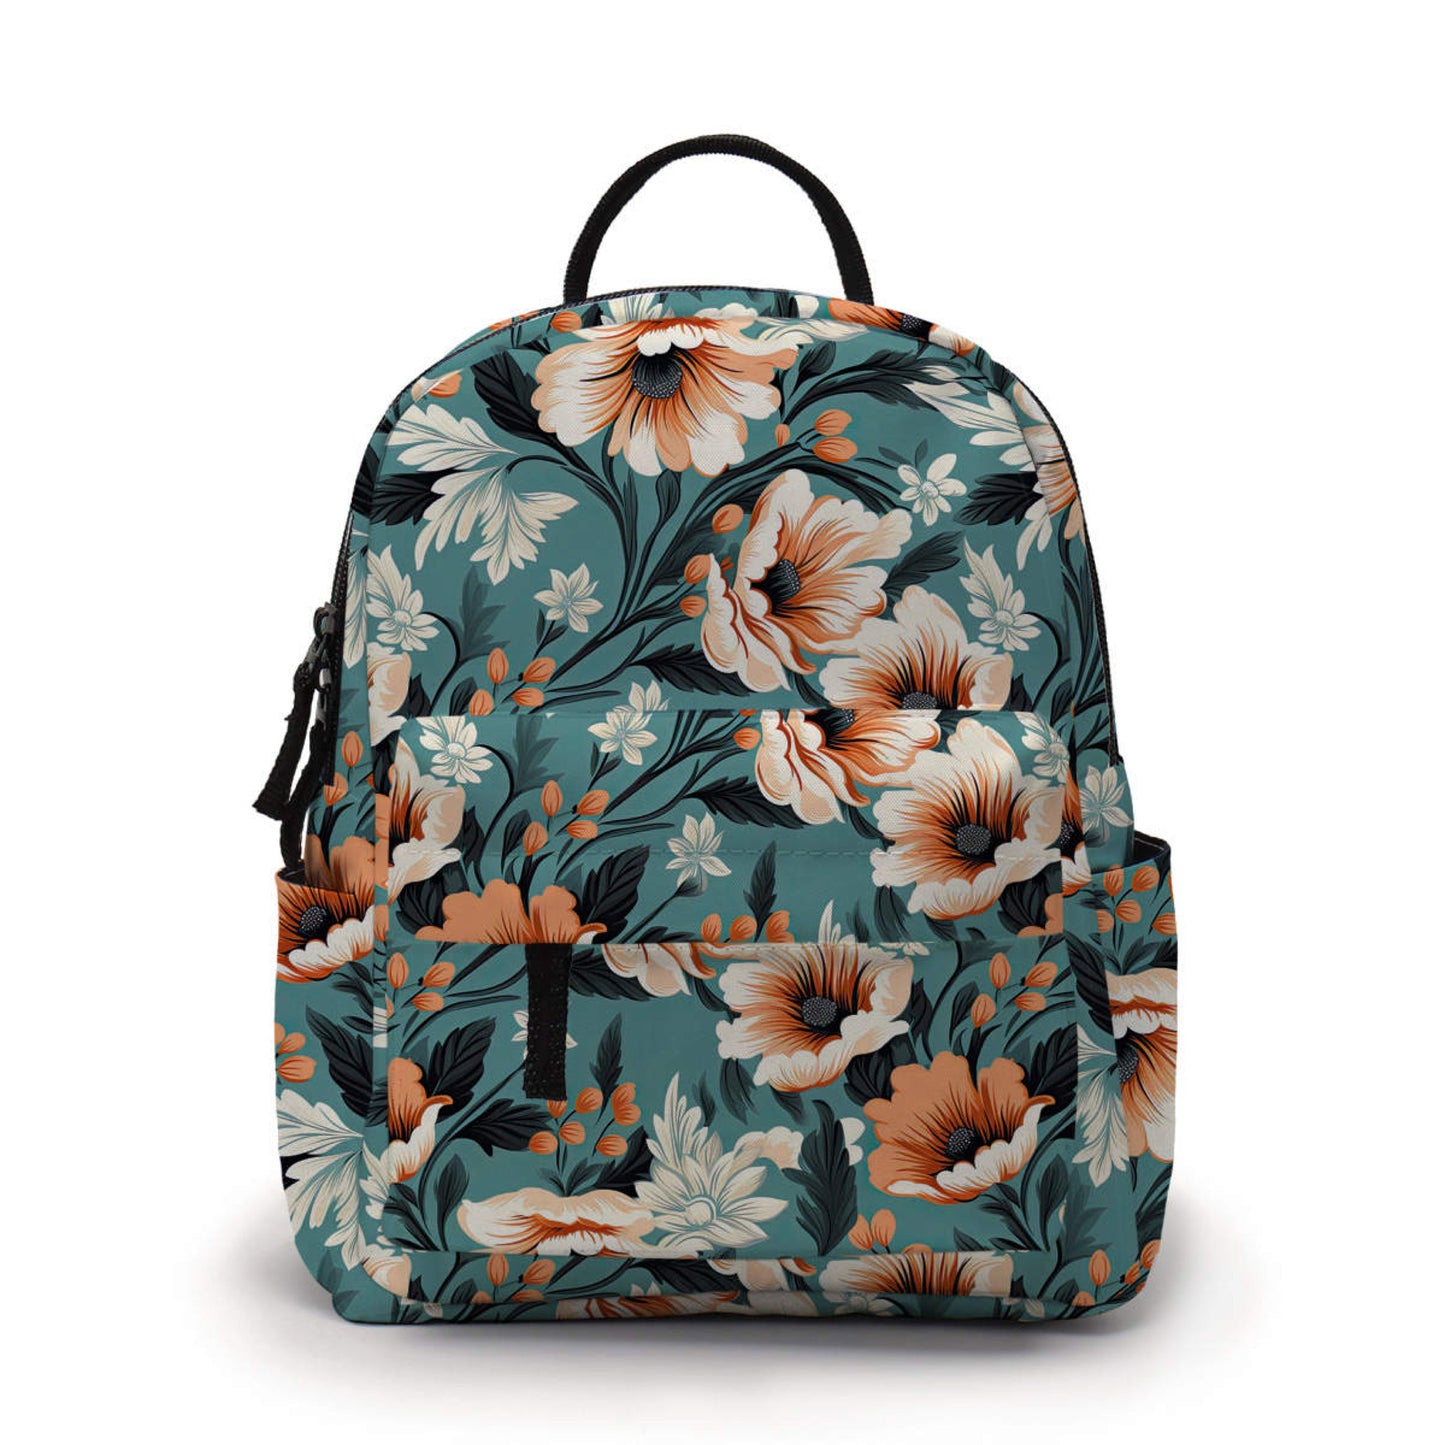 Mini Backpack - Orange Cream Floral On Teal